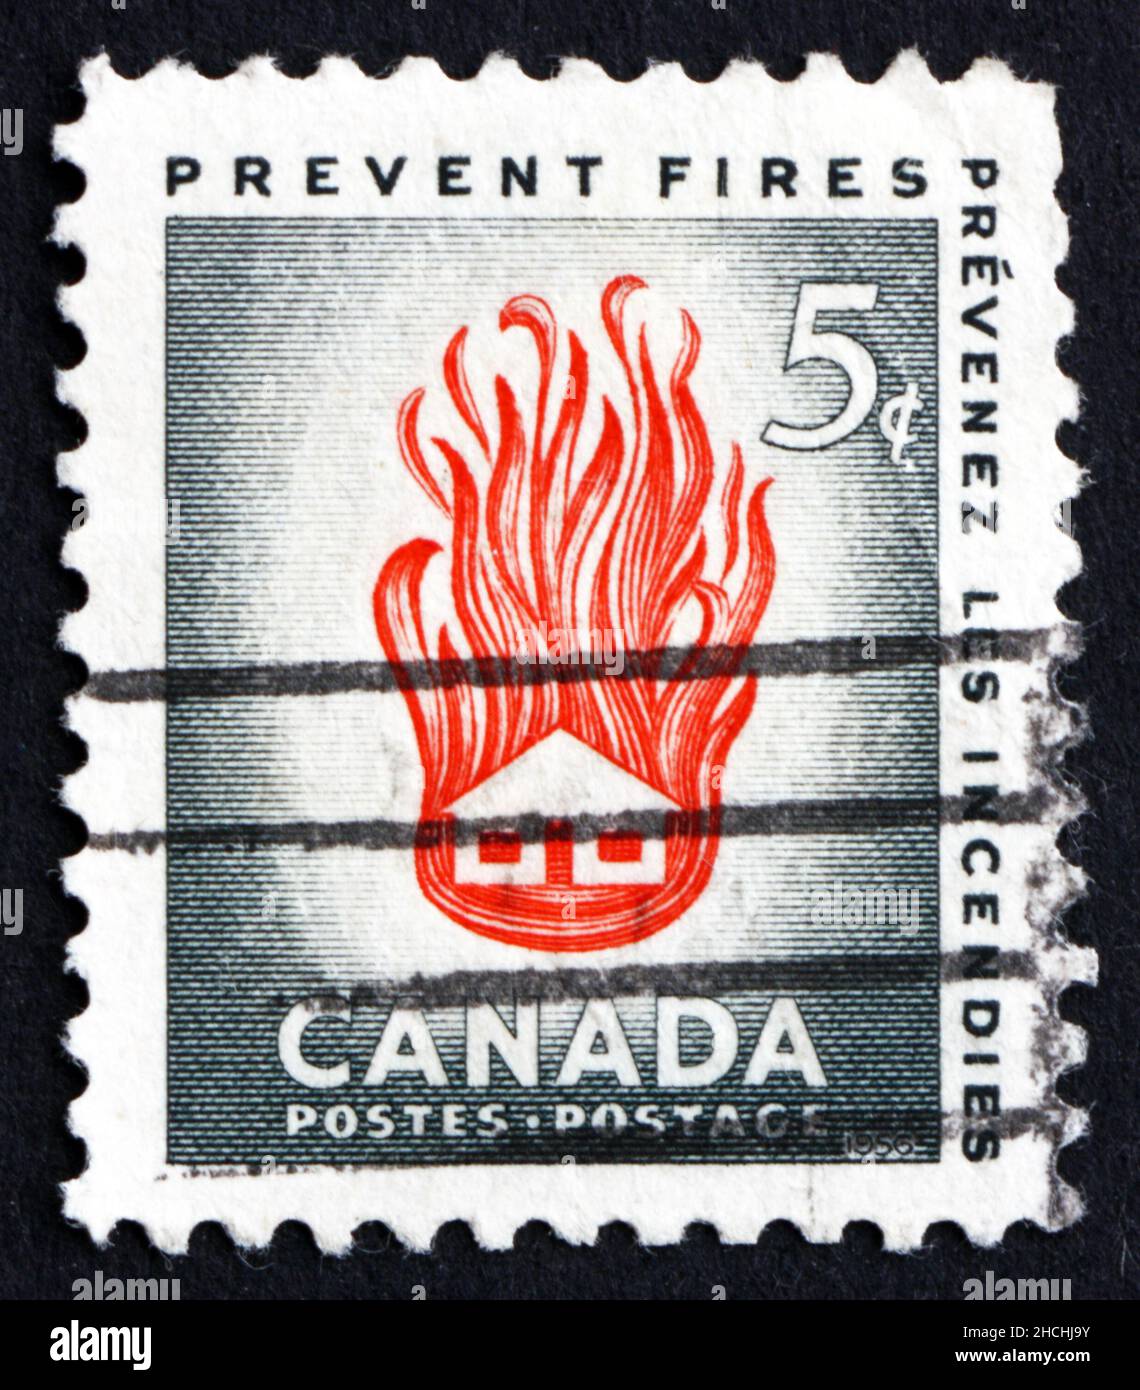 KANADA - UM 1956: Ein Stempel, der in Kanada gedruckt wurde, zeigt House on Fire, The Needless Waste, die durch vermeidbare Brände verursacht wurden, um 1956 Stockfoto